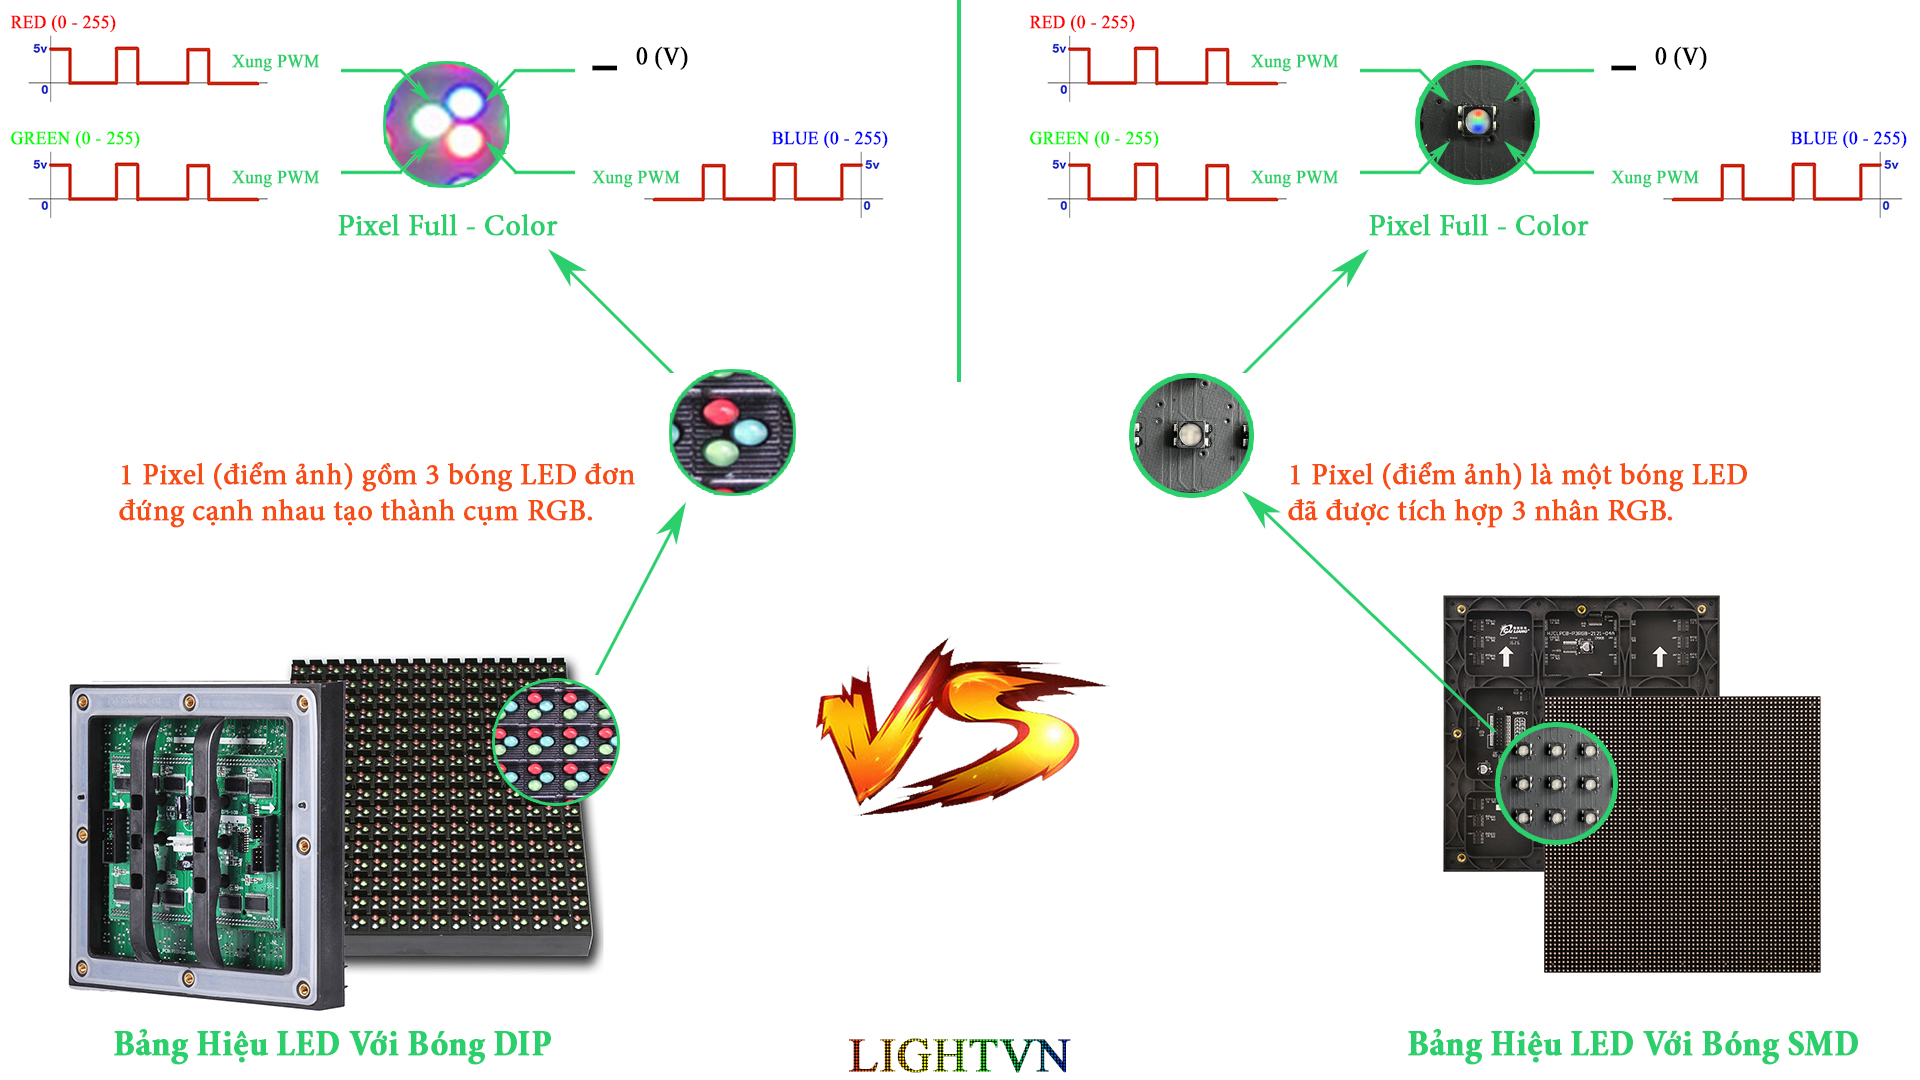 Bảng Hiệu LED DIP vs SMD.